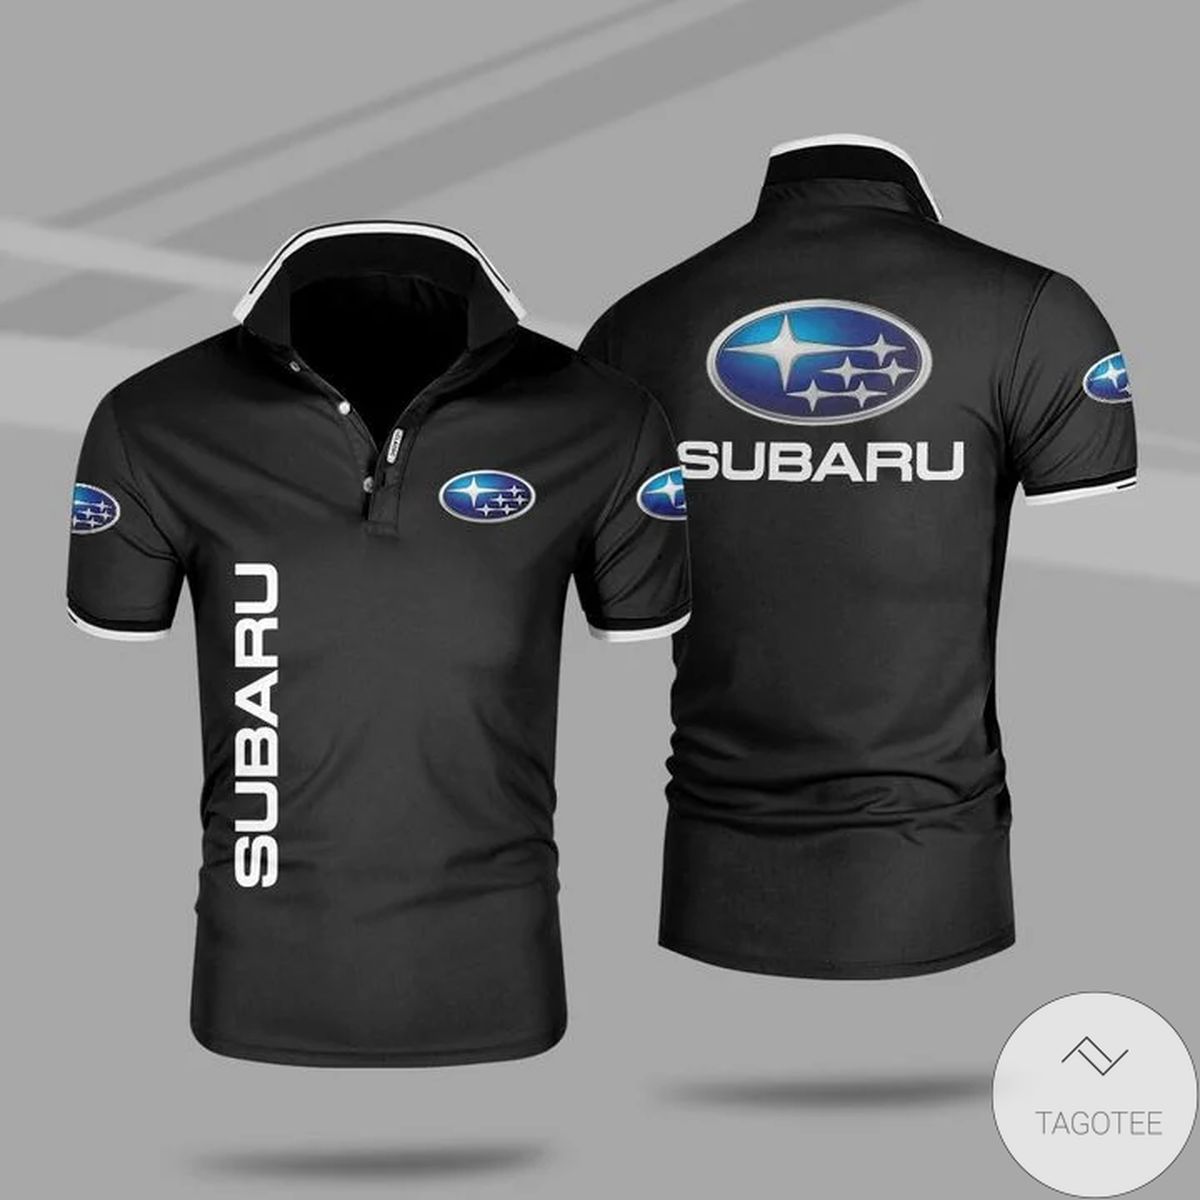 Subaru Polo Shirt